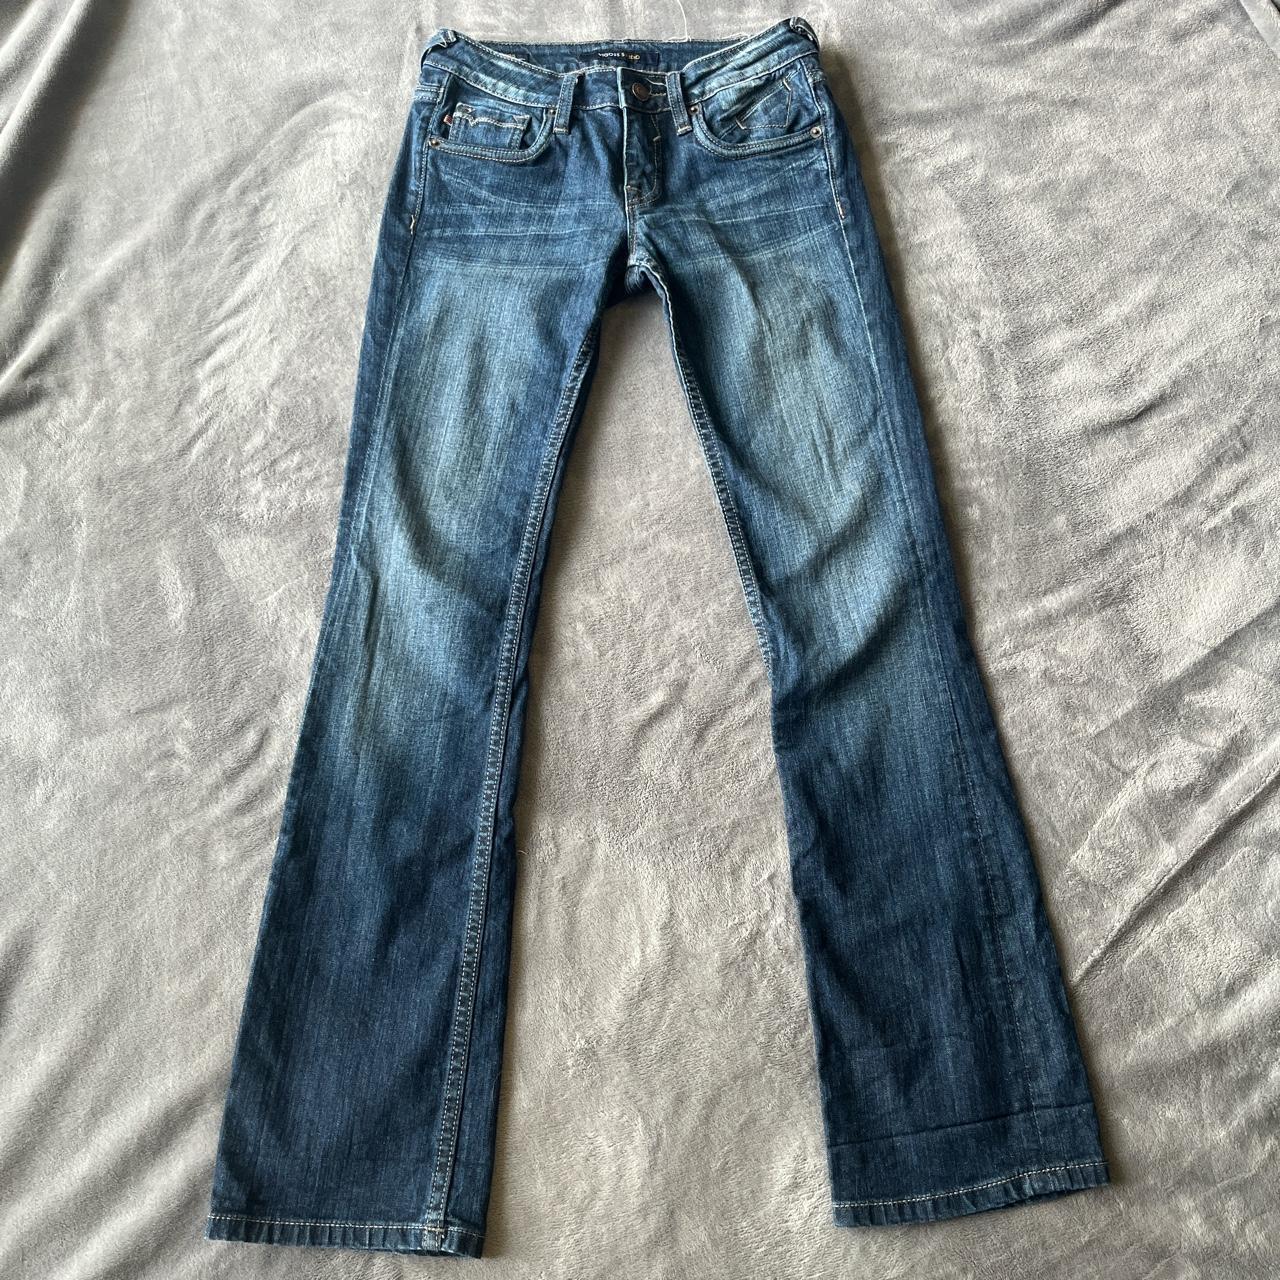 No PayPal pls Boot cut jeans Size: 25 waist, 32... - Depop